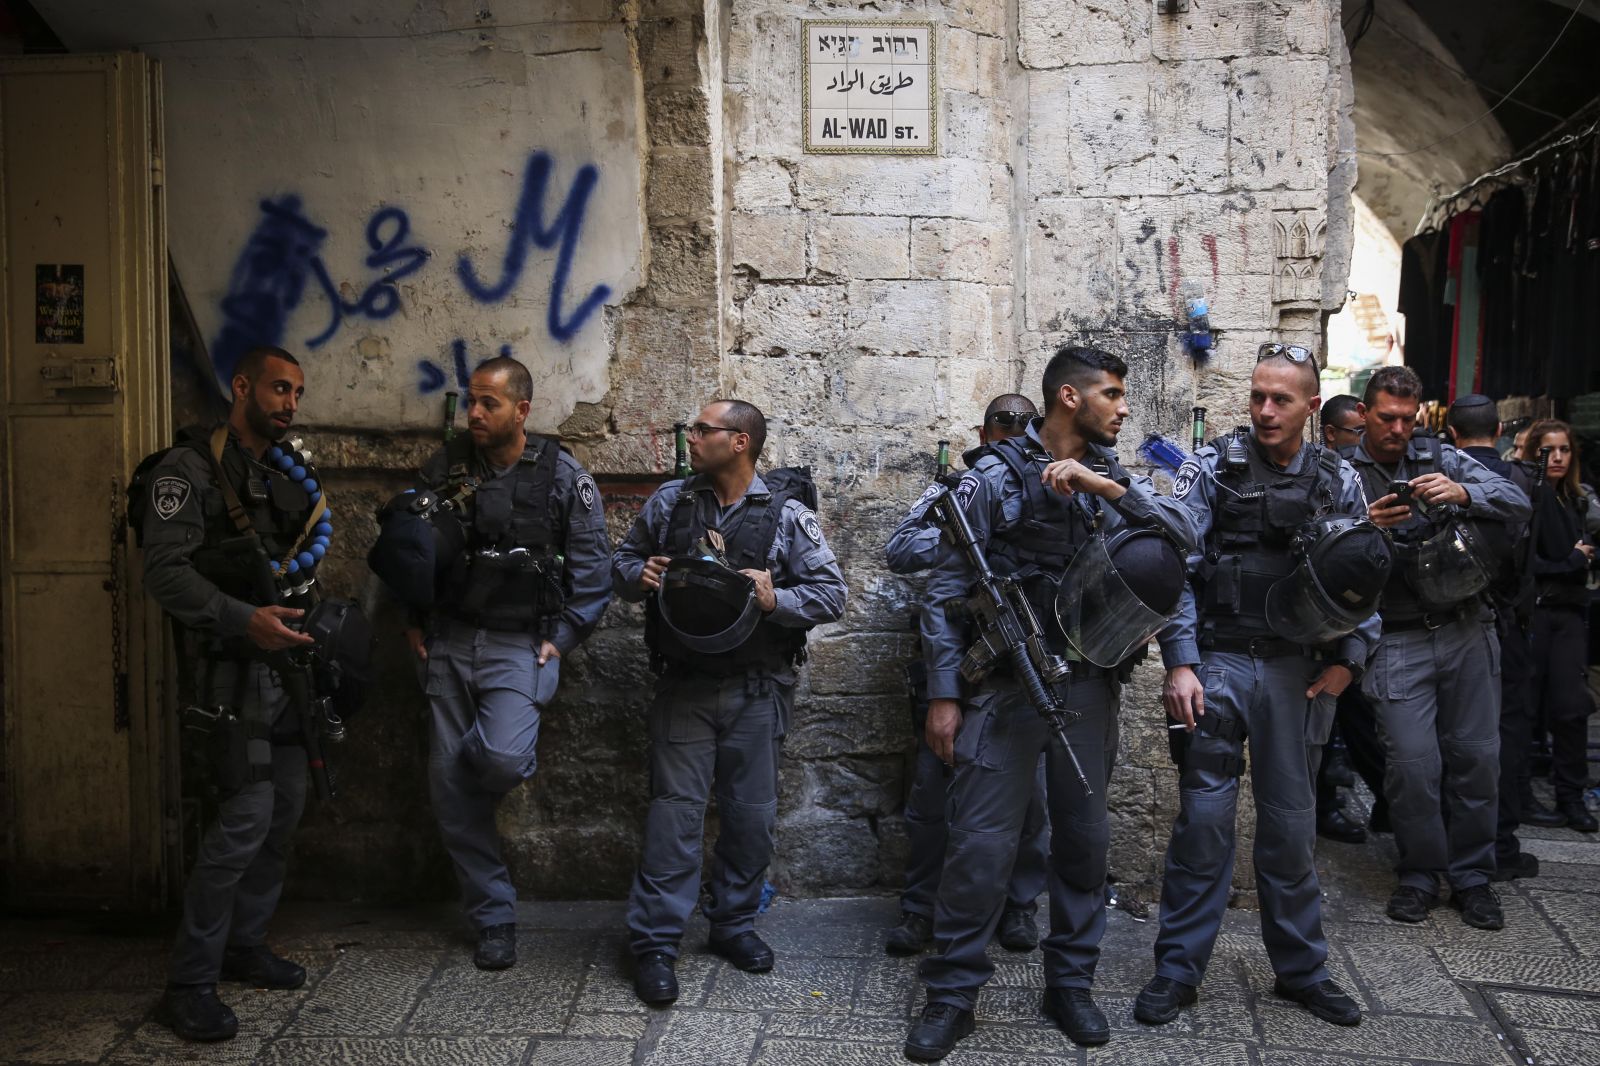 שוטרי מג"ב בירושלים העתיקה, סמוך לאחת הכניסות למתחם הר הבית. 13.10.14 (צילום: הדס פרוש)